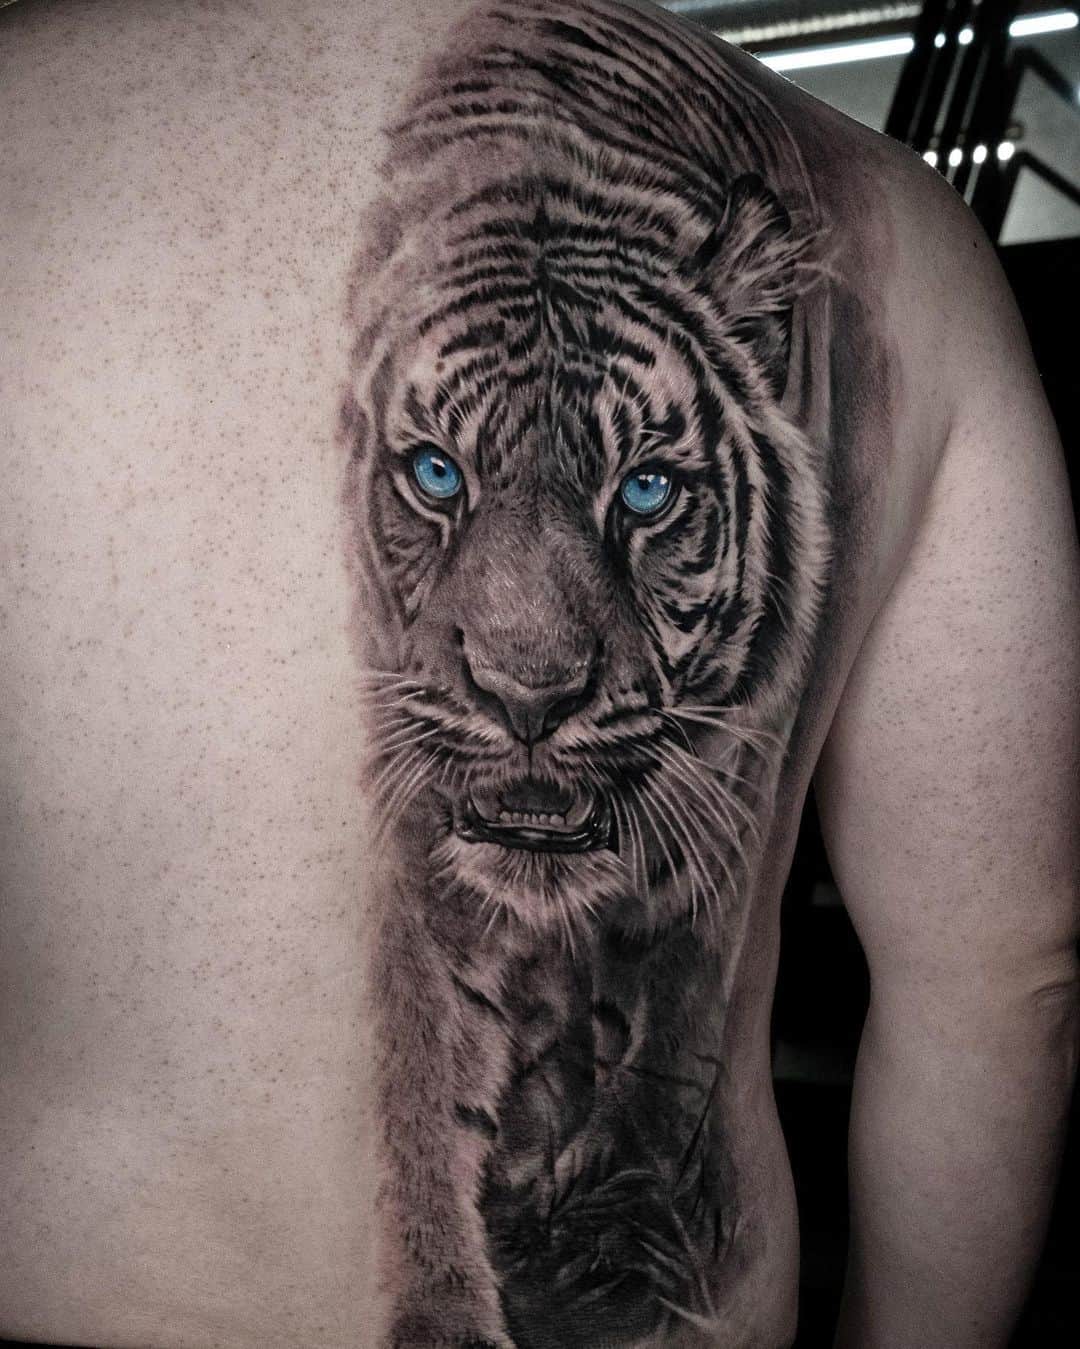 Tiger tattoo on back by tattooist bega